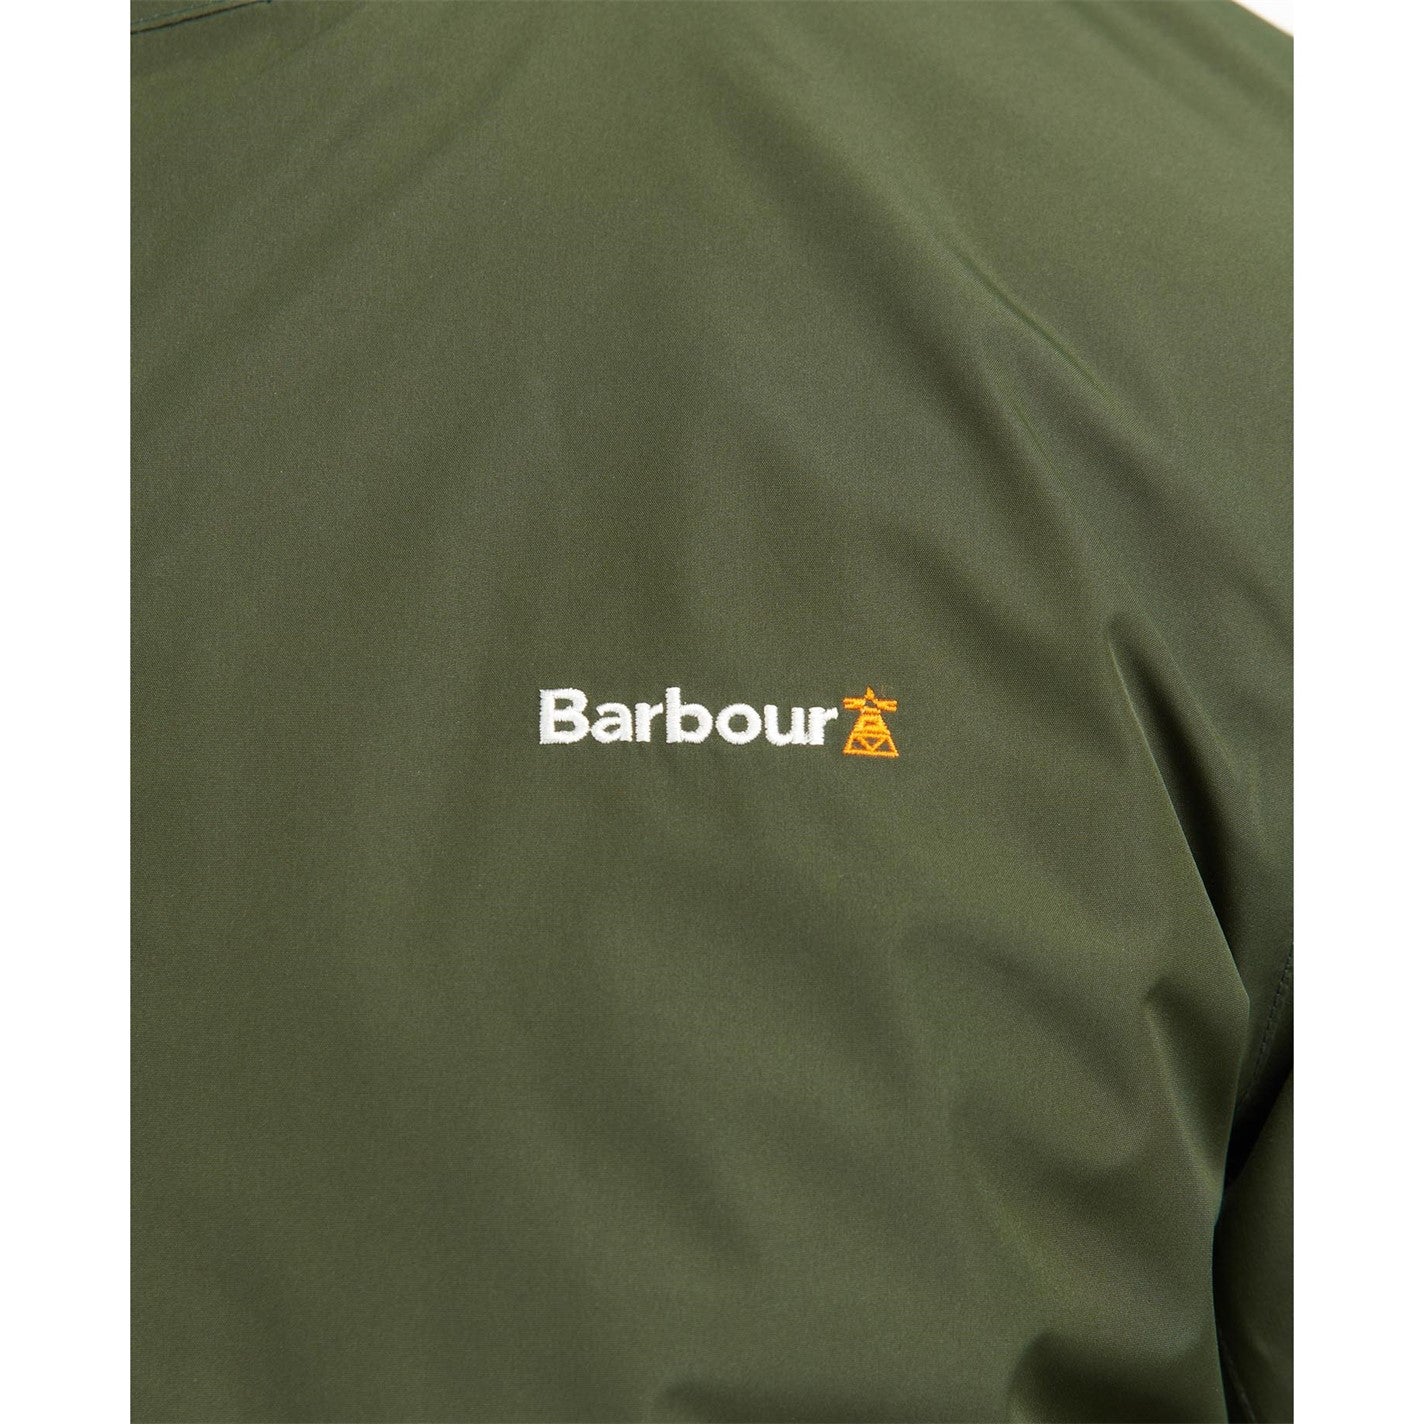 Barbour Waterproof Jacket - DANYOUNGUK